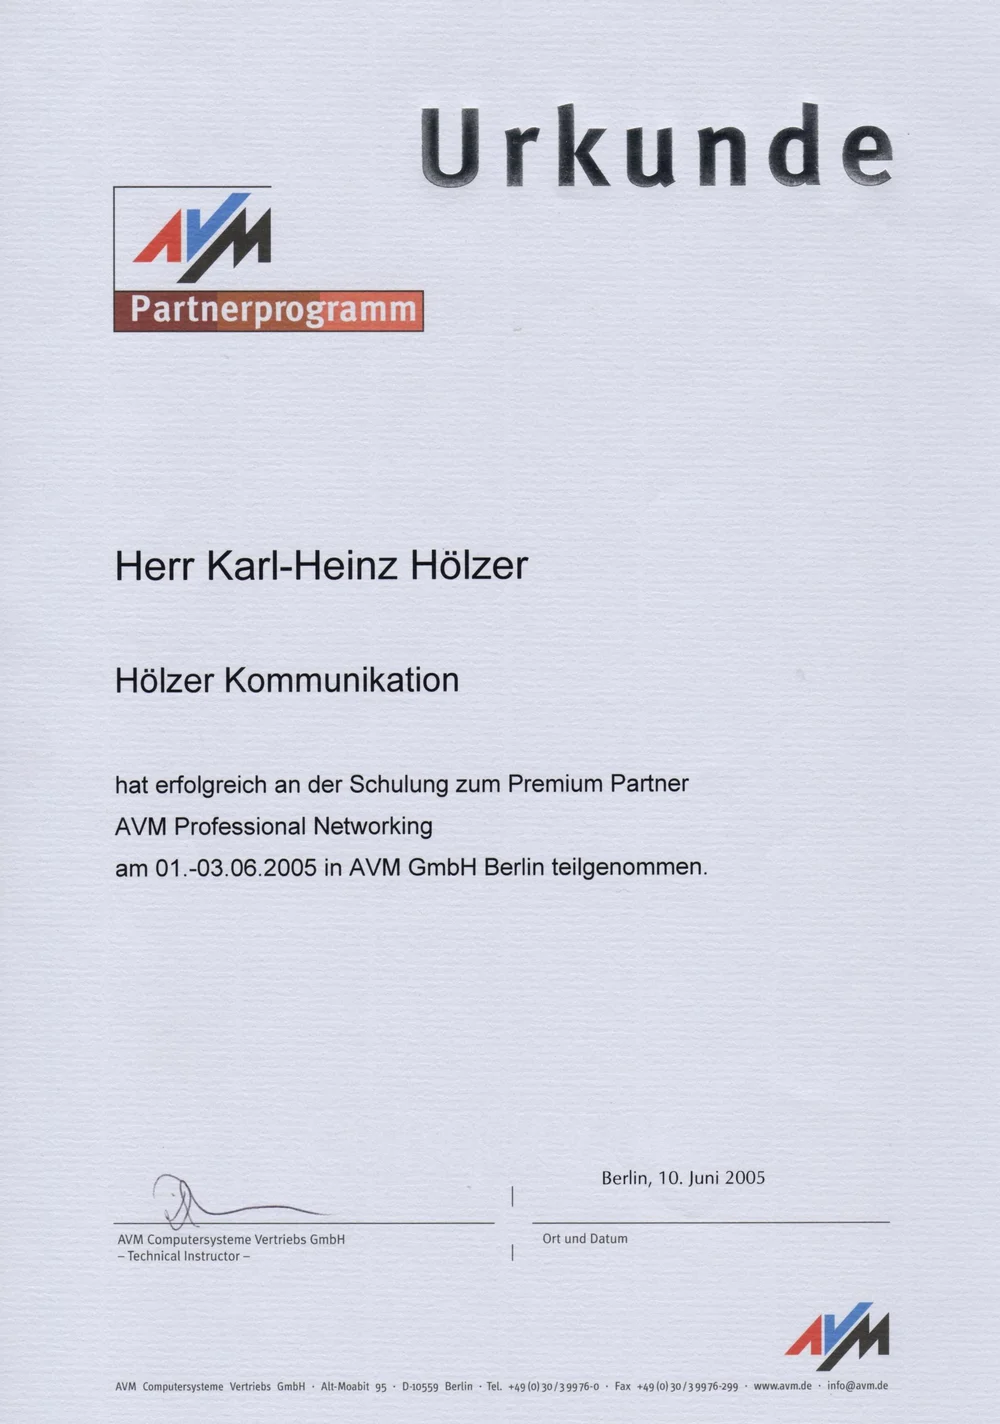 AVM Premium Partner Urkunde, 2005